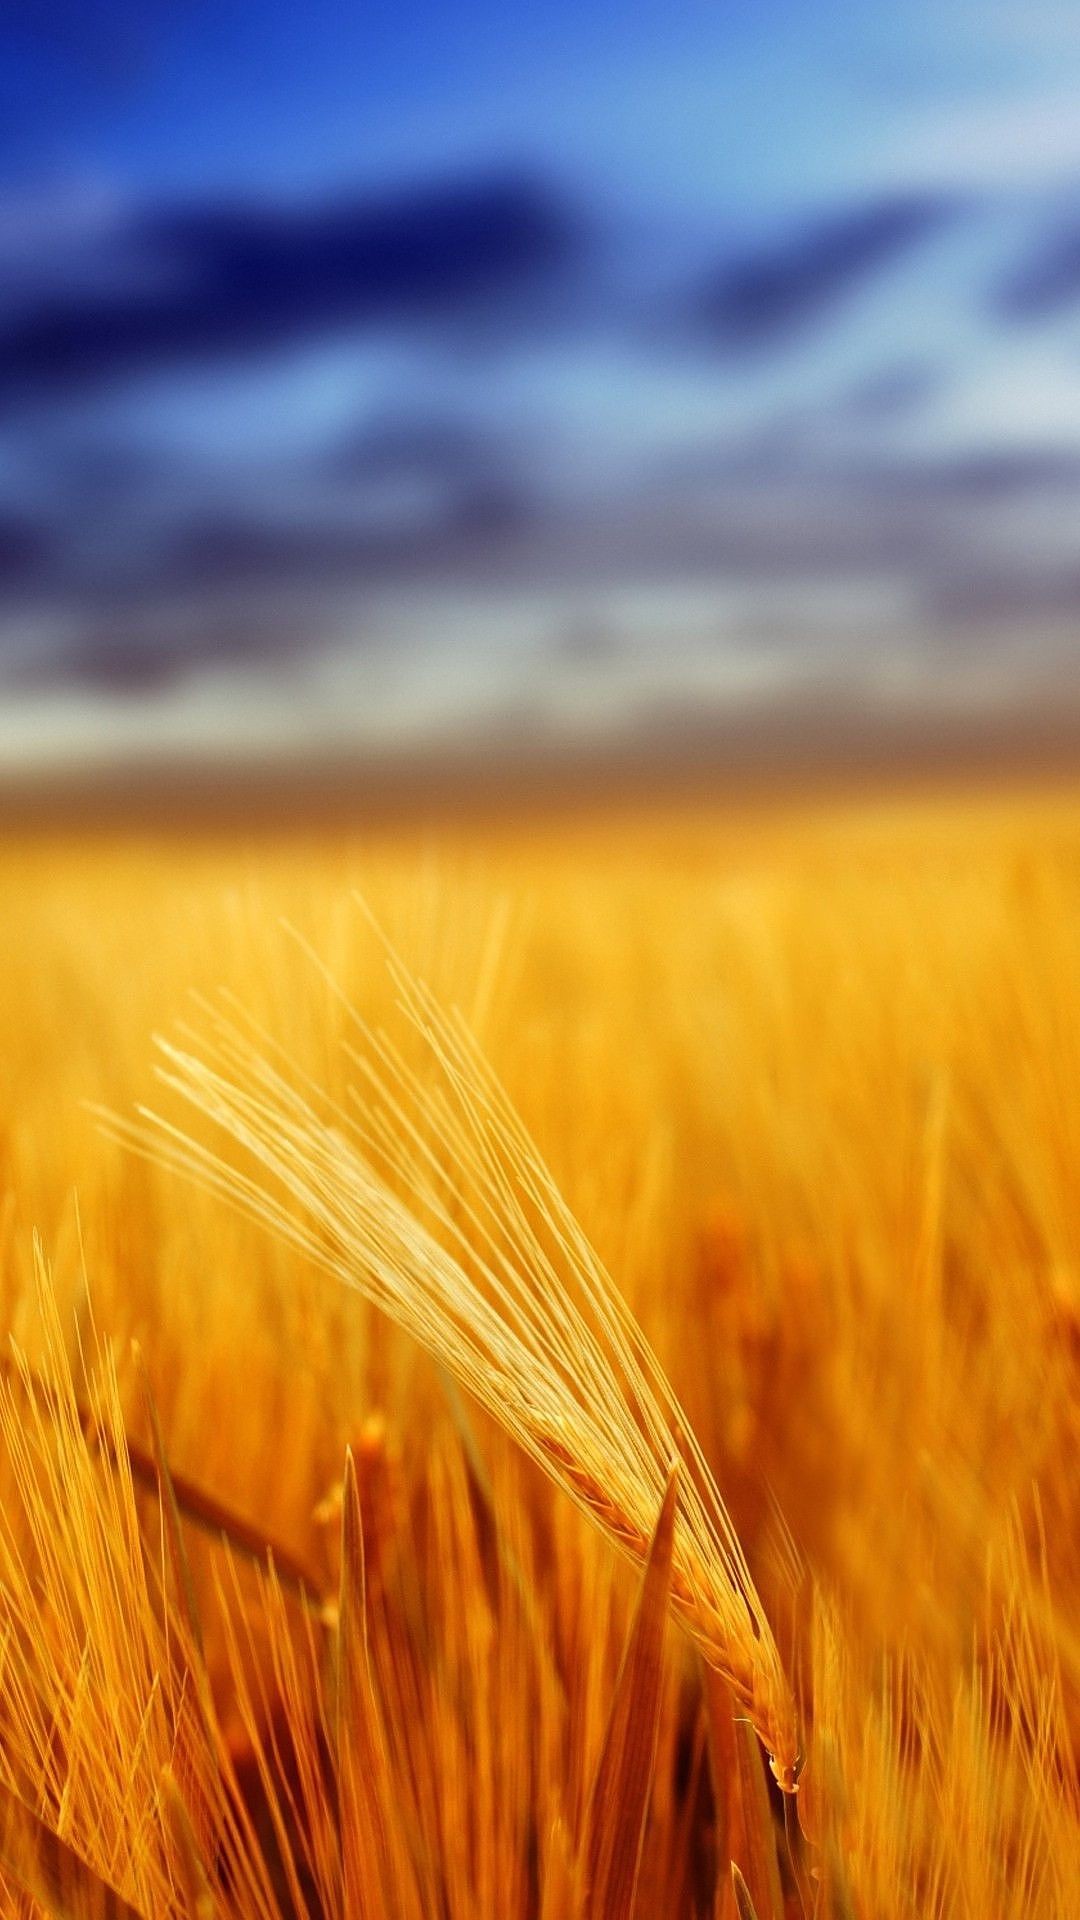 golden wallpaper for mobile,barley,field,rye,einkorn wheat,hordeum